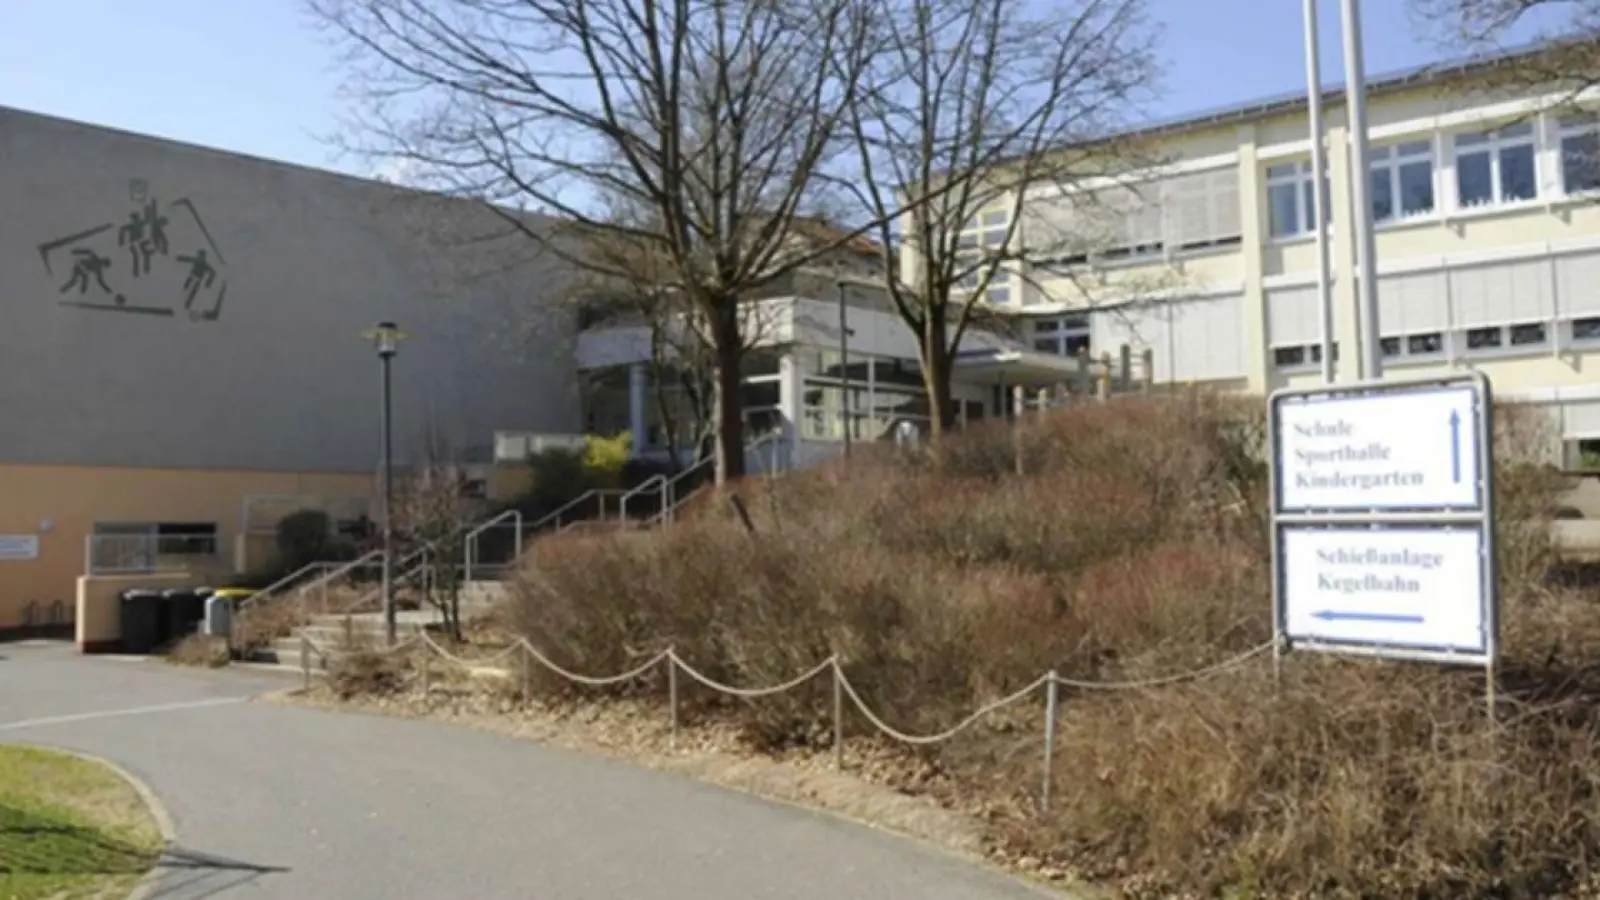 Heinersreuth erhält für die neue Turnhalle eine Bundesförderung in Höhe von rund 2,7 Mio. Euro. (Foto: Gemeinde Heinersreuth)